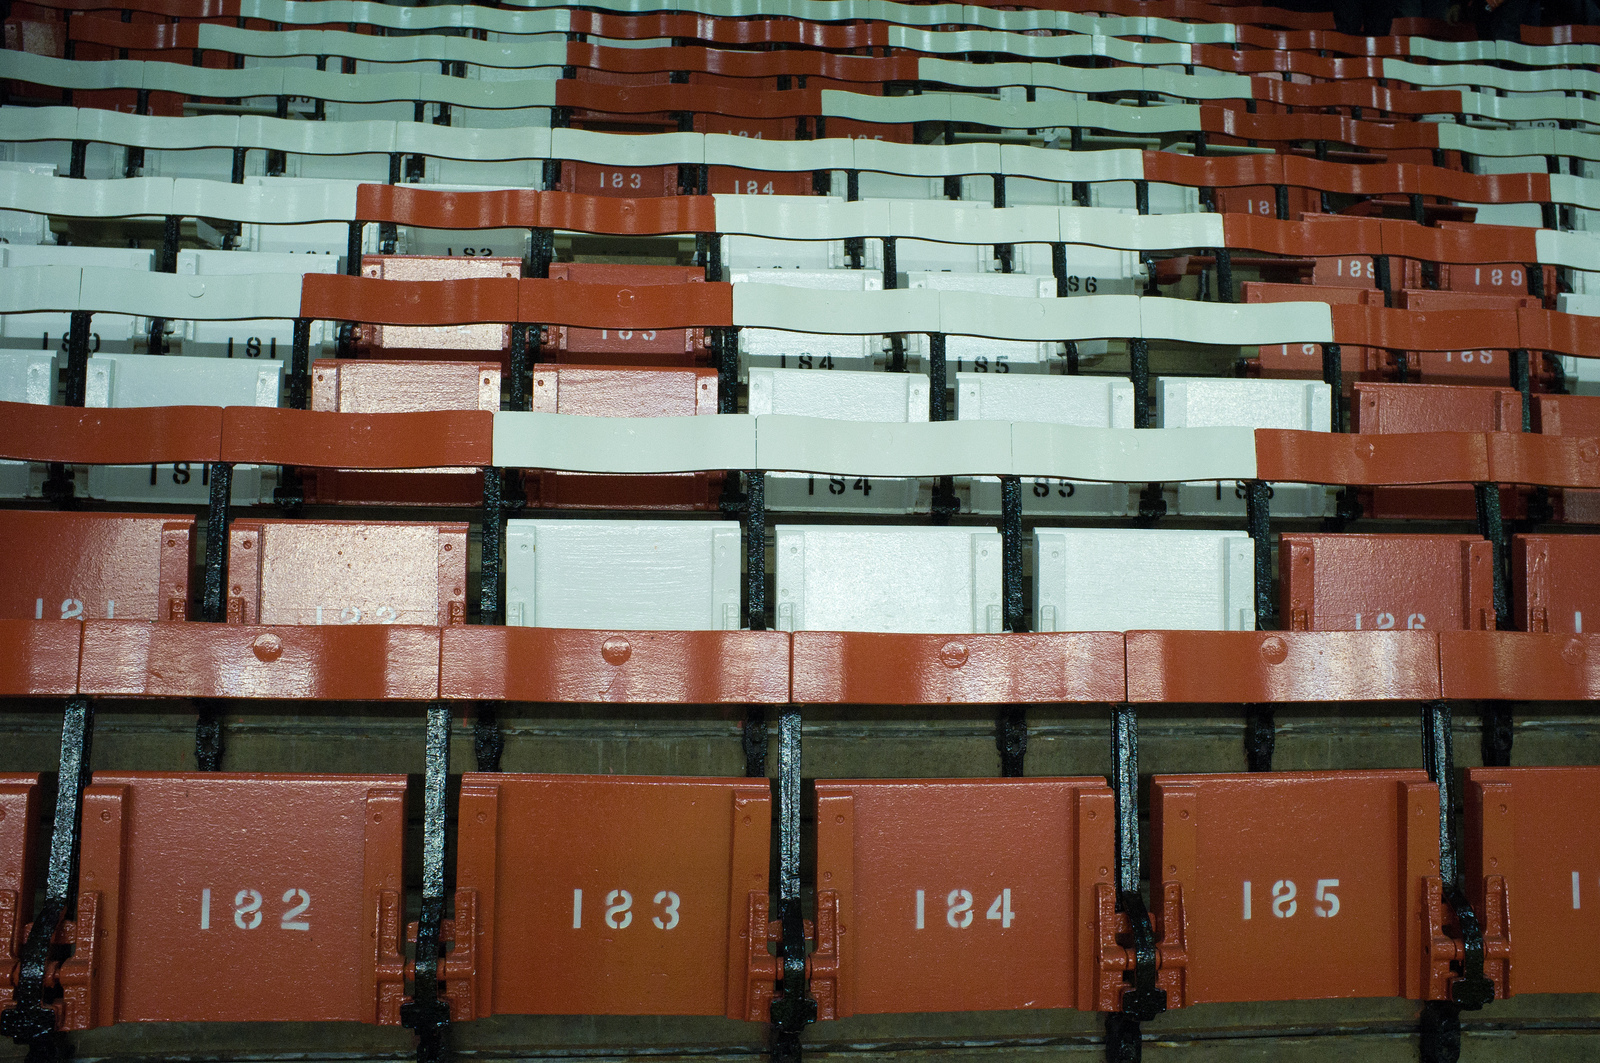 Main Stand, Anfield by John Paul Dantanus via Flickr